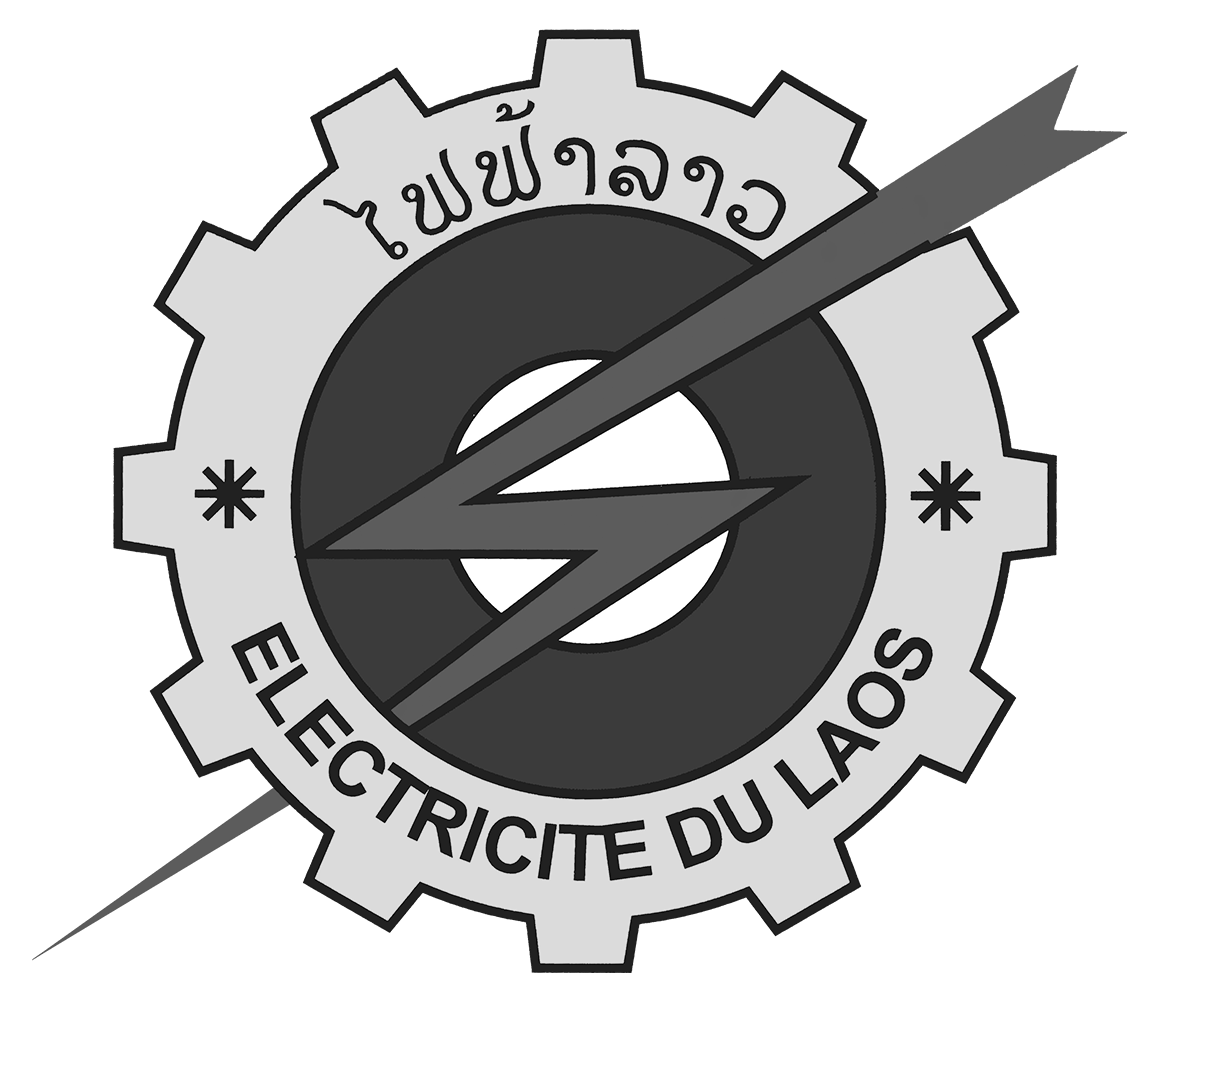 Electricite du laos